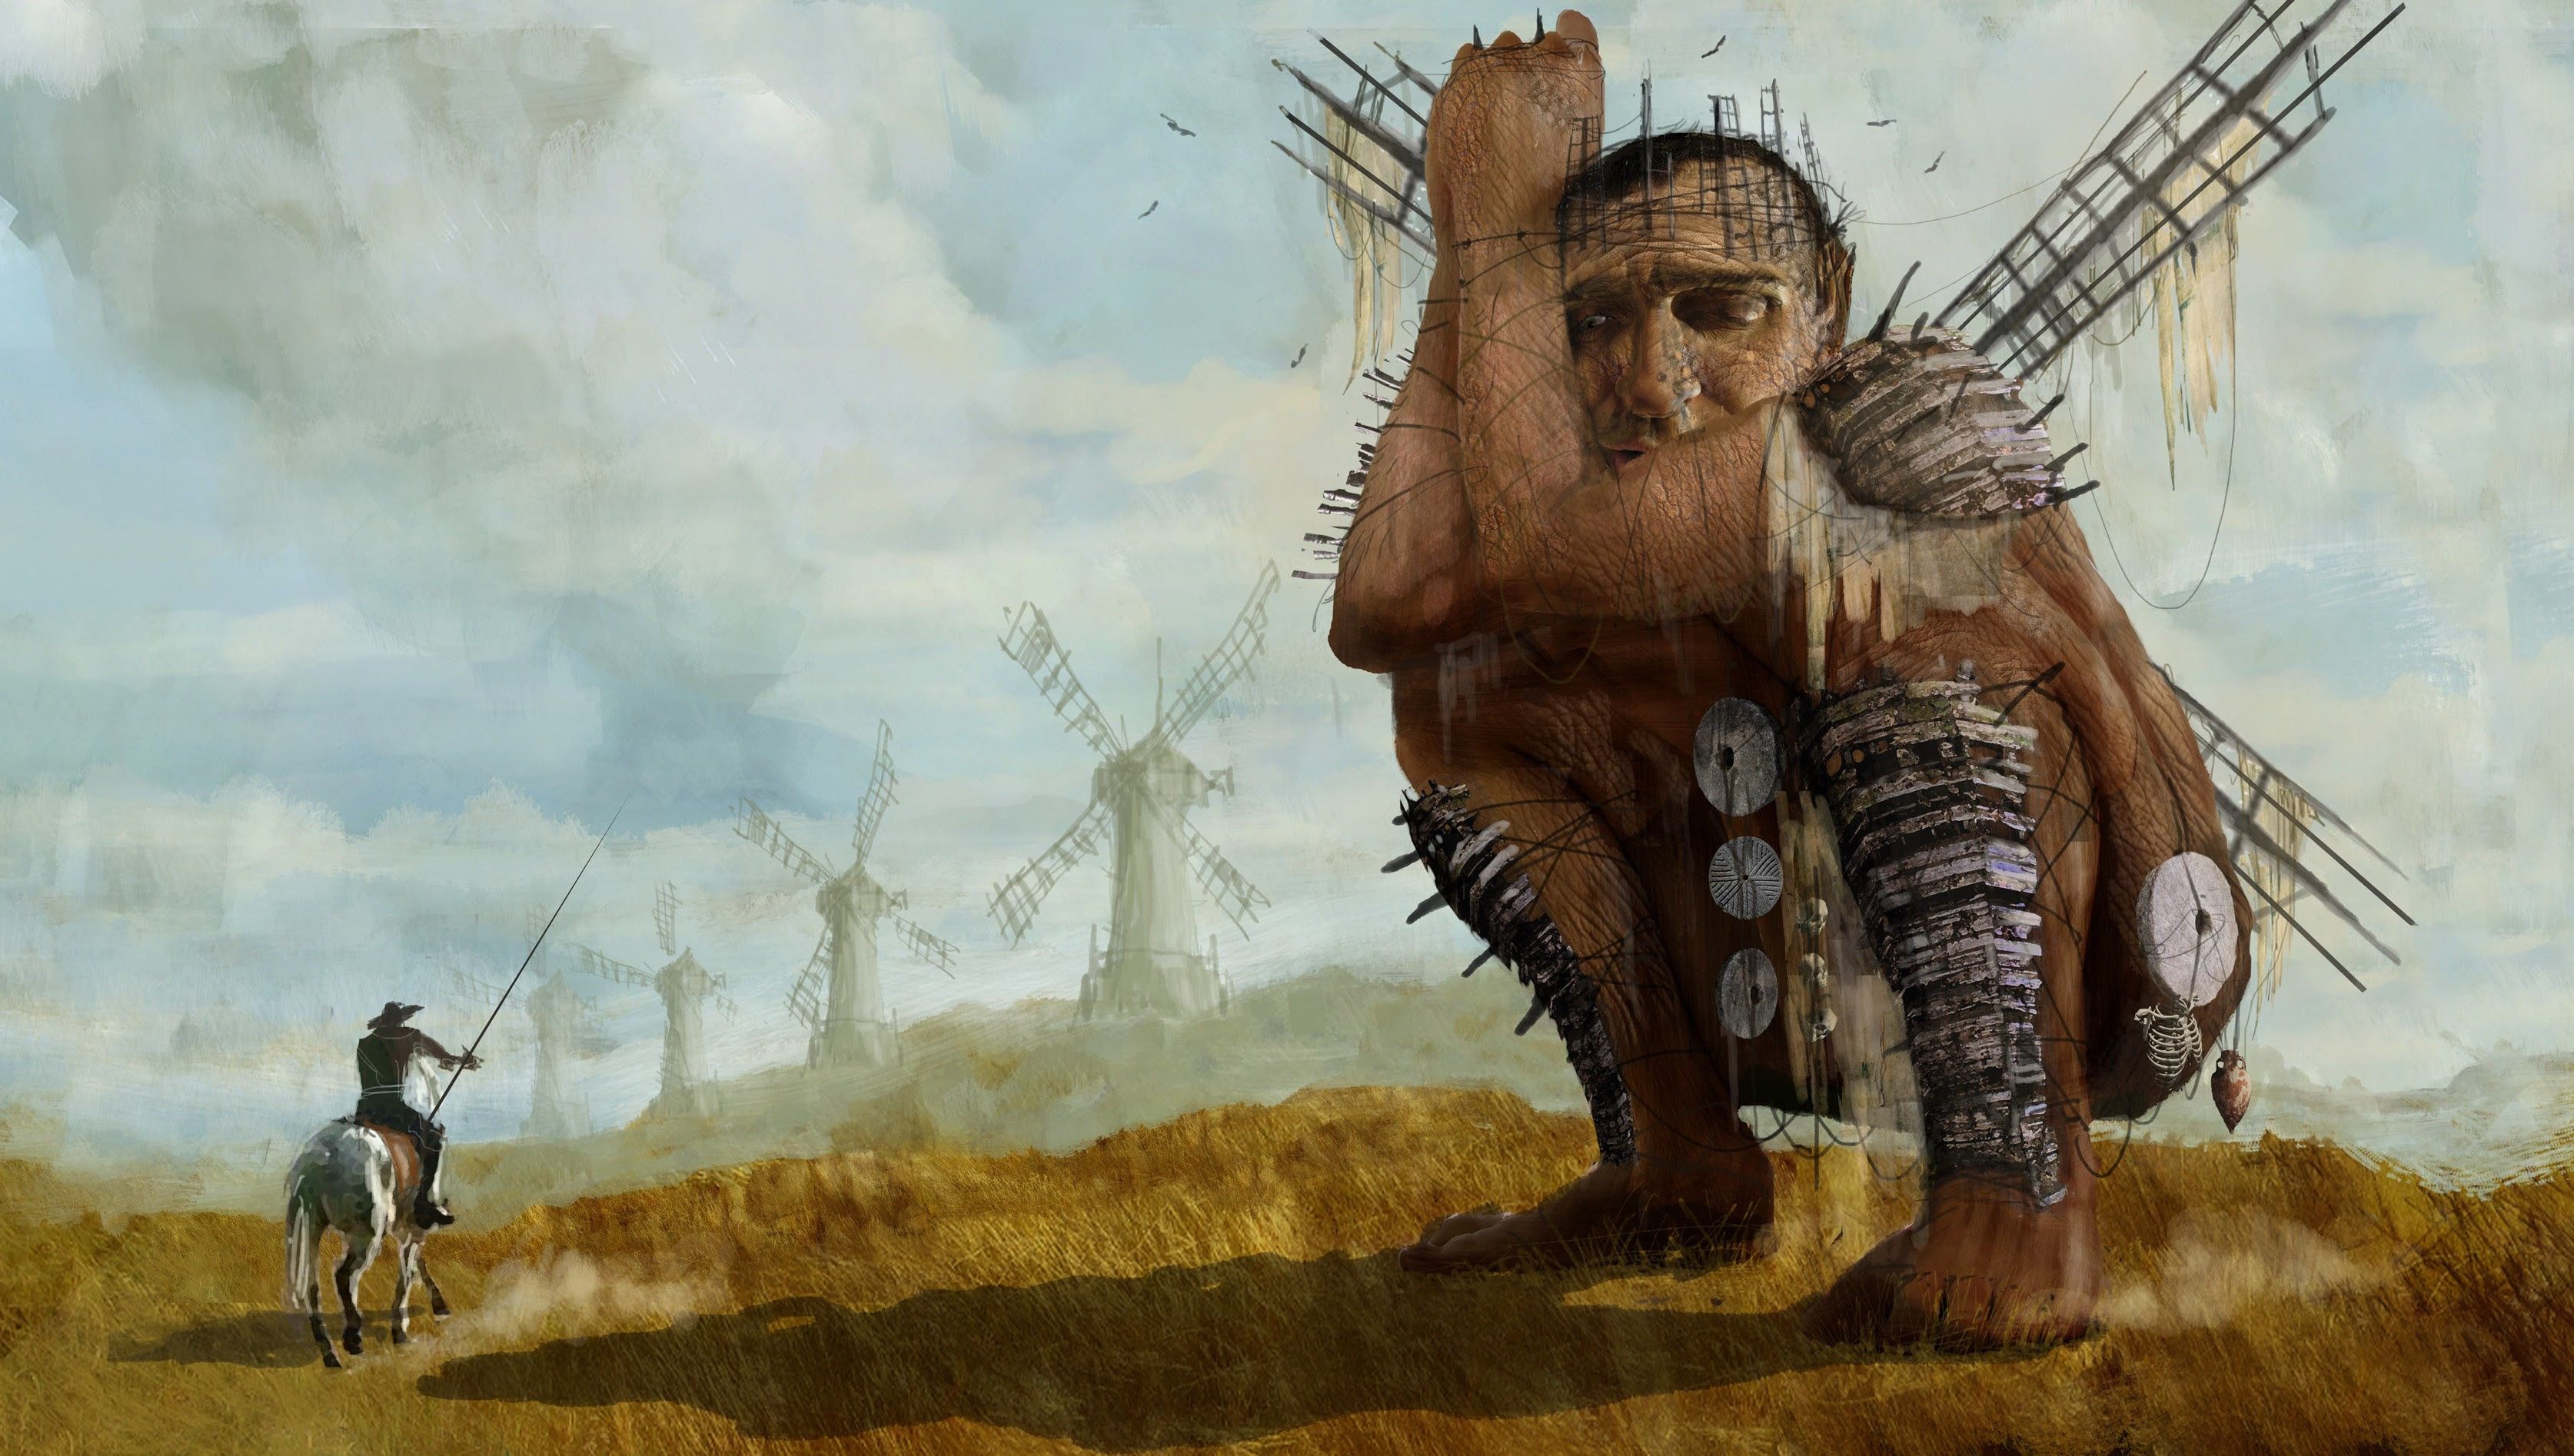 Don Quixote tilting at windmills, Terry Gilliam